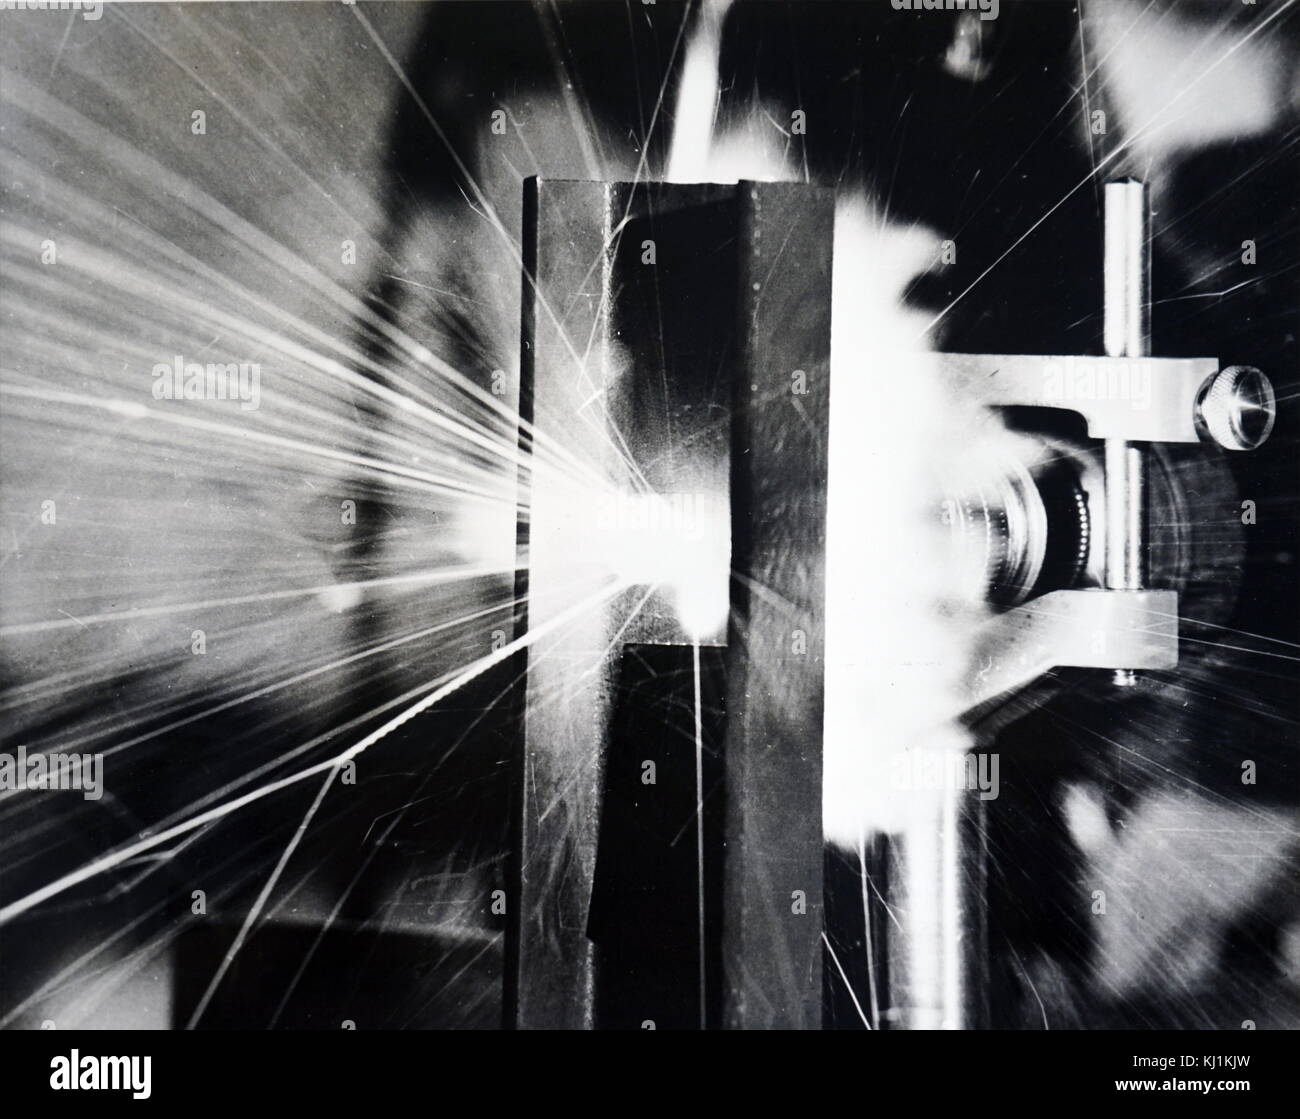 Foto von einem Wissenschaftler testen eines "closed-circuit "Laser, Superior, ein gyroskop Für die Führung der Raumfahrzeuge, Raketen, Flugzeuge und Schiffe. Laserlicht Balken blinken durch die vier Leuchtstoffröhren in entgegengesetzte Richtungen werden verwendet, um kleine Bewegungen des Labor Tabelle zu messen. Vom 20. Jahrhundert Stockfoto